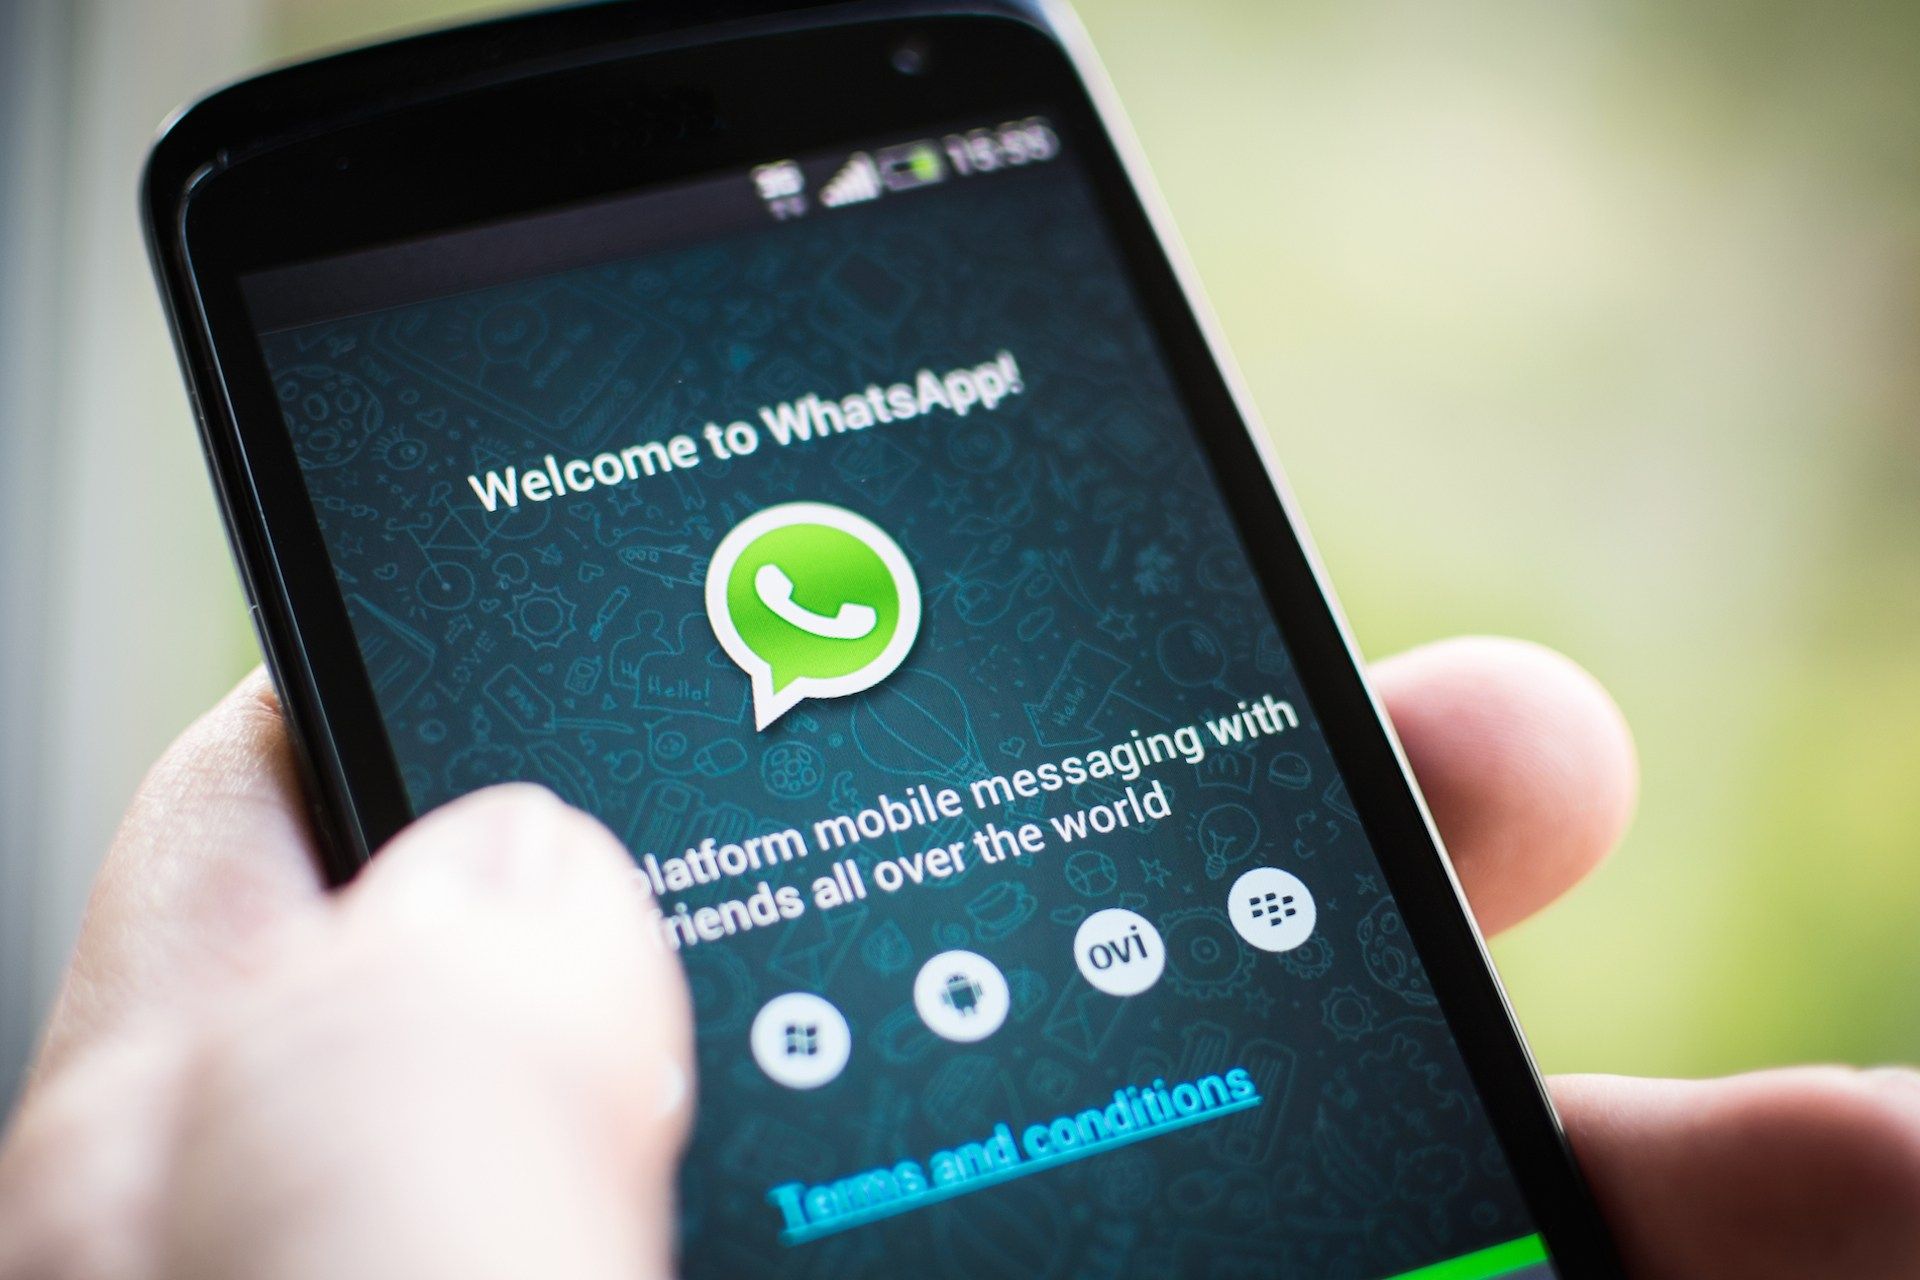 Kostenlose Videoanrufe auf WhatsApp?